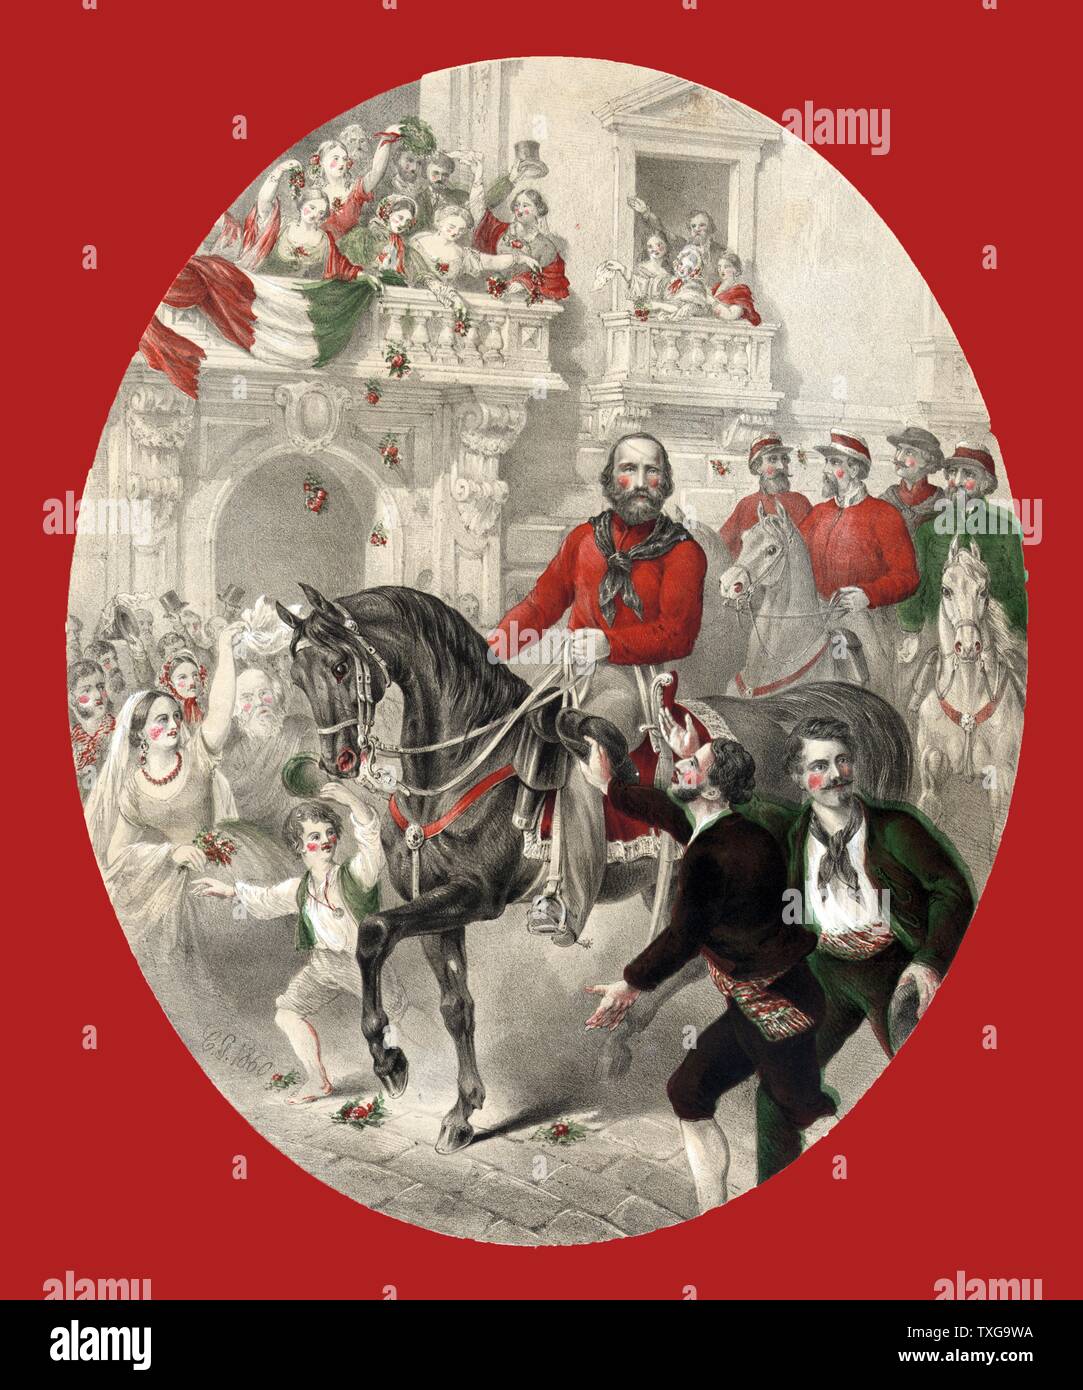 Giuseppe Garibaldi (1807-1882) soldato italiano, nazionalista e politico. La gente acclamava come Garibaldi corse in Napoli alla testa dei suoi mille Redshirts - 1860 Litografia Foto Stock